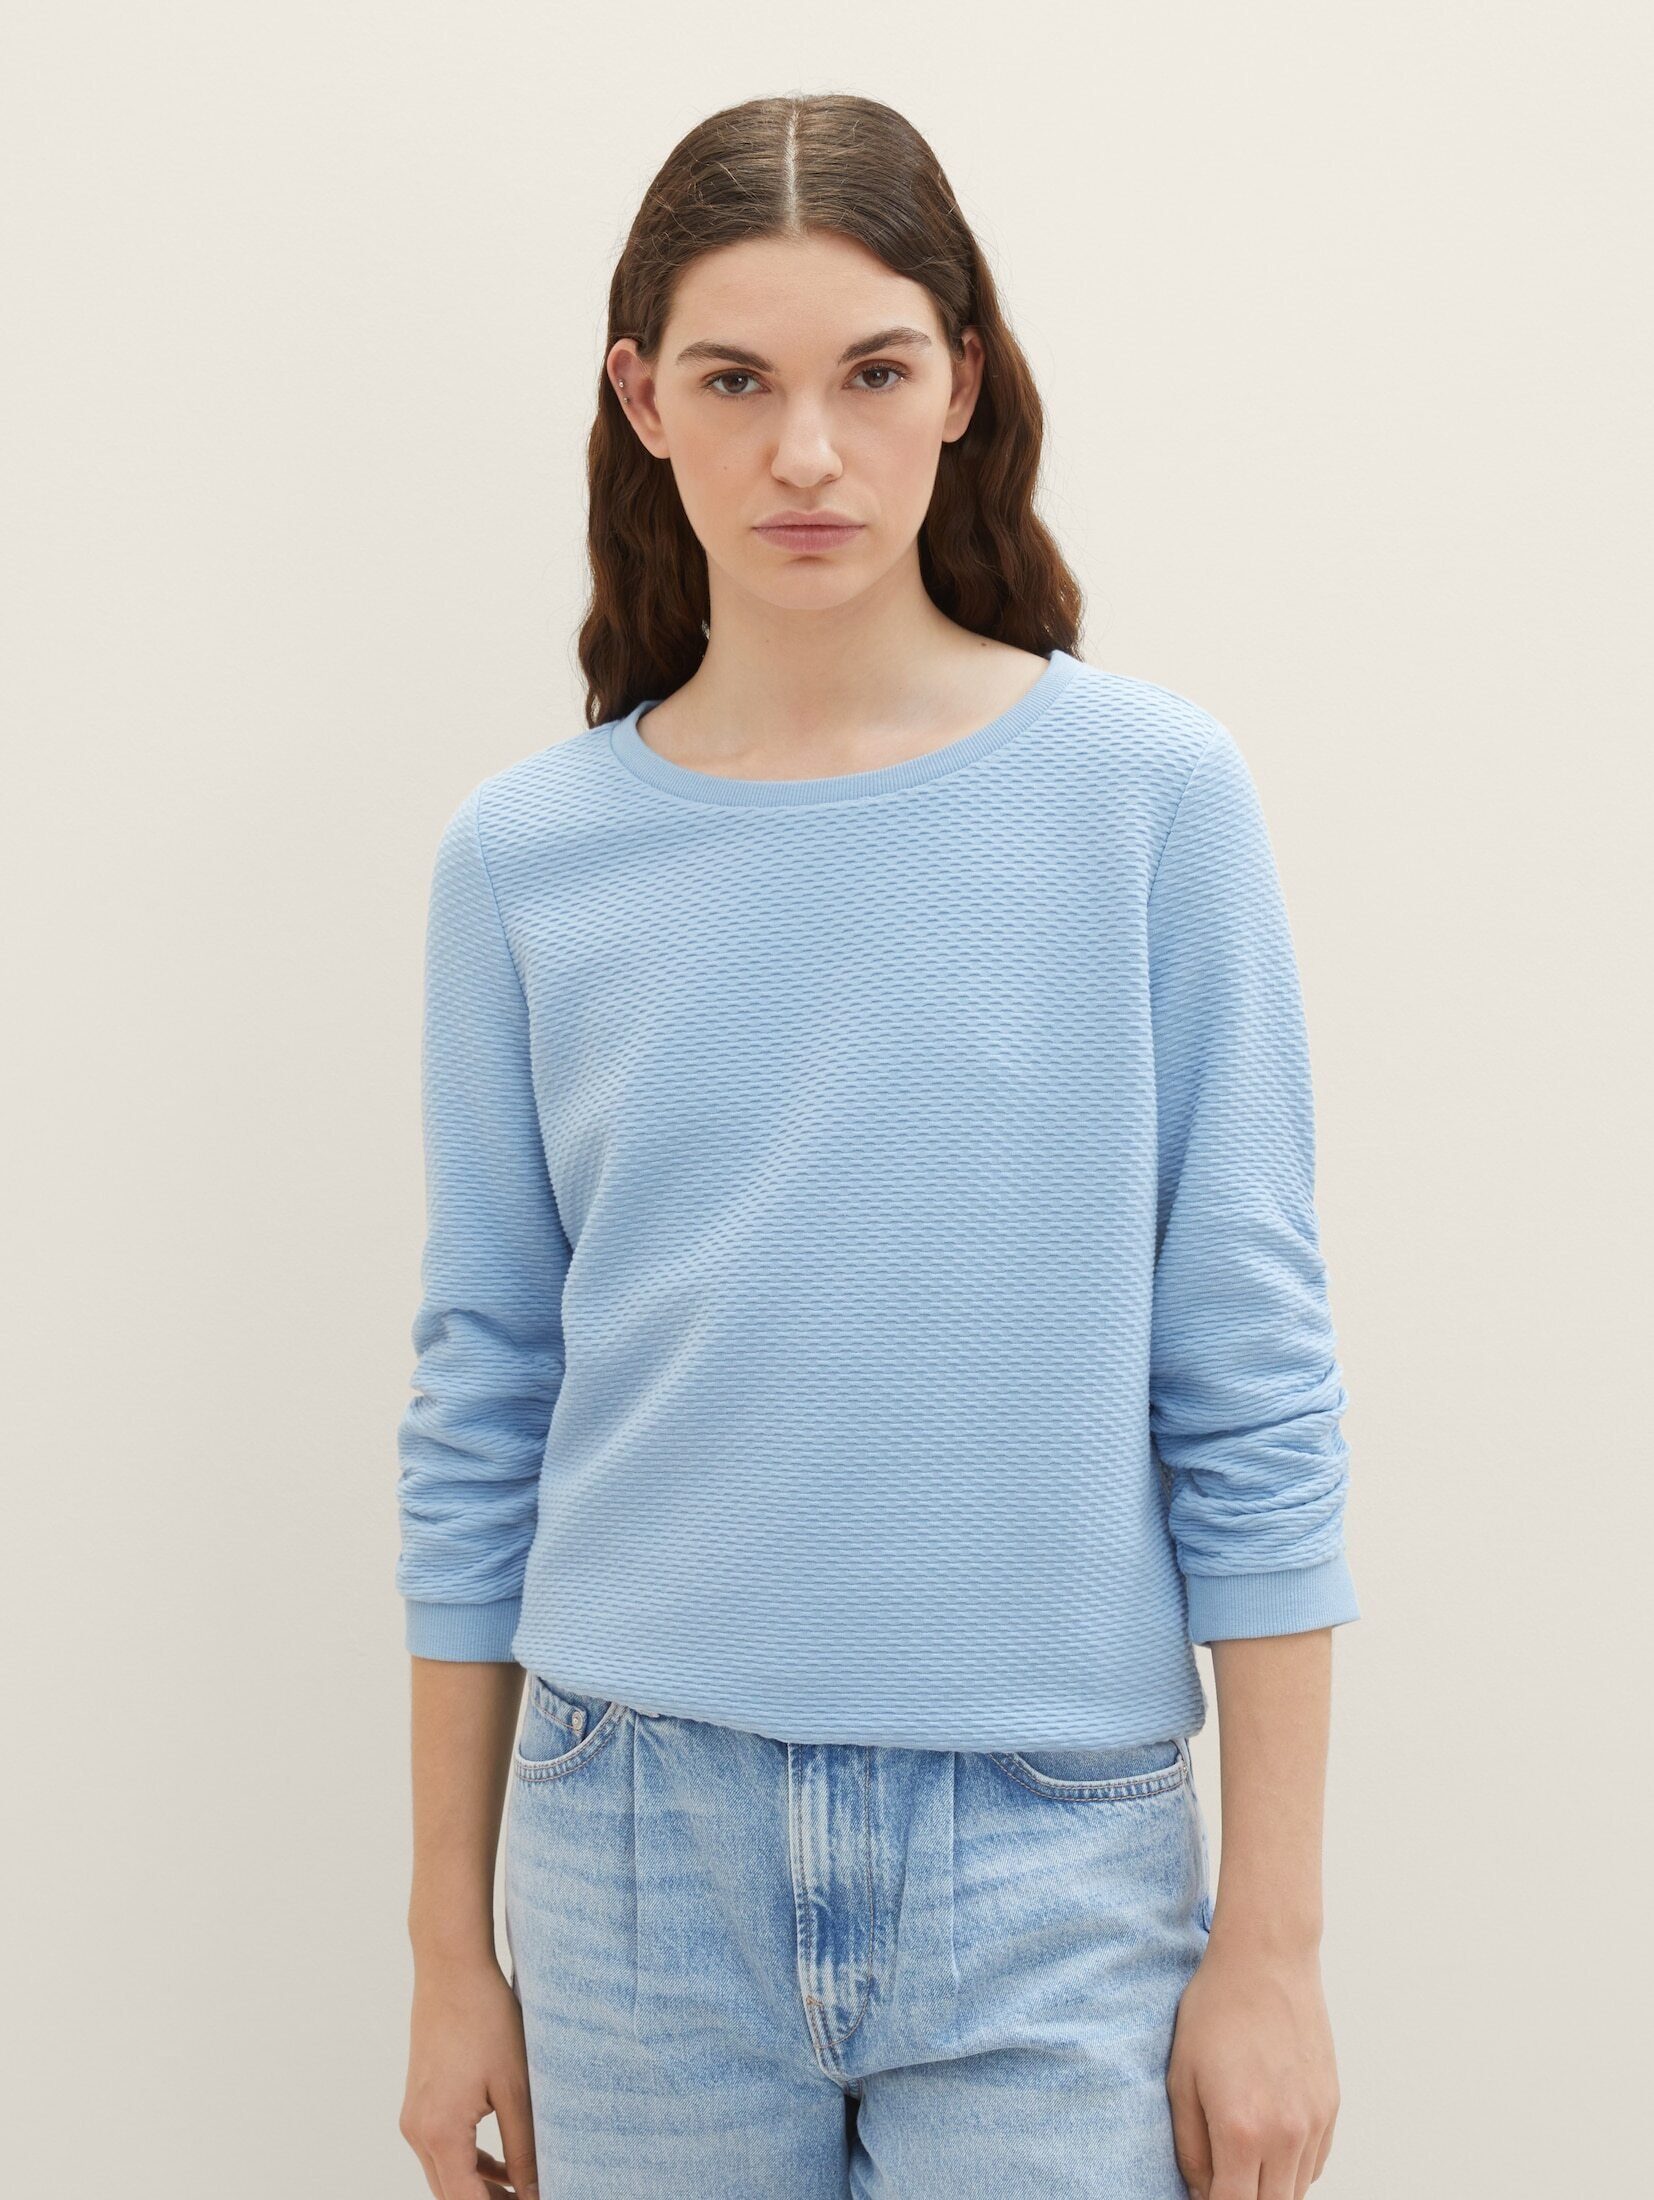 Beliebte Websites TOM TAILOR Denim Blue Charming Sweatshirt Soft Sweatshirt Strukturiertes